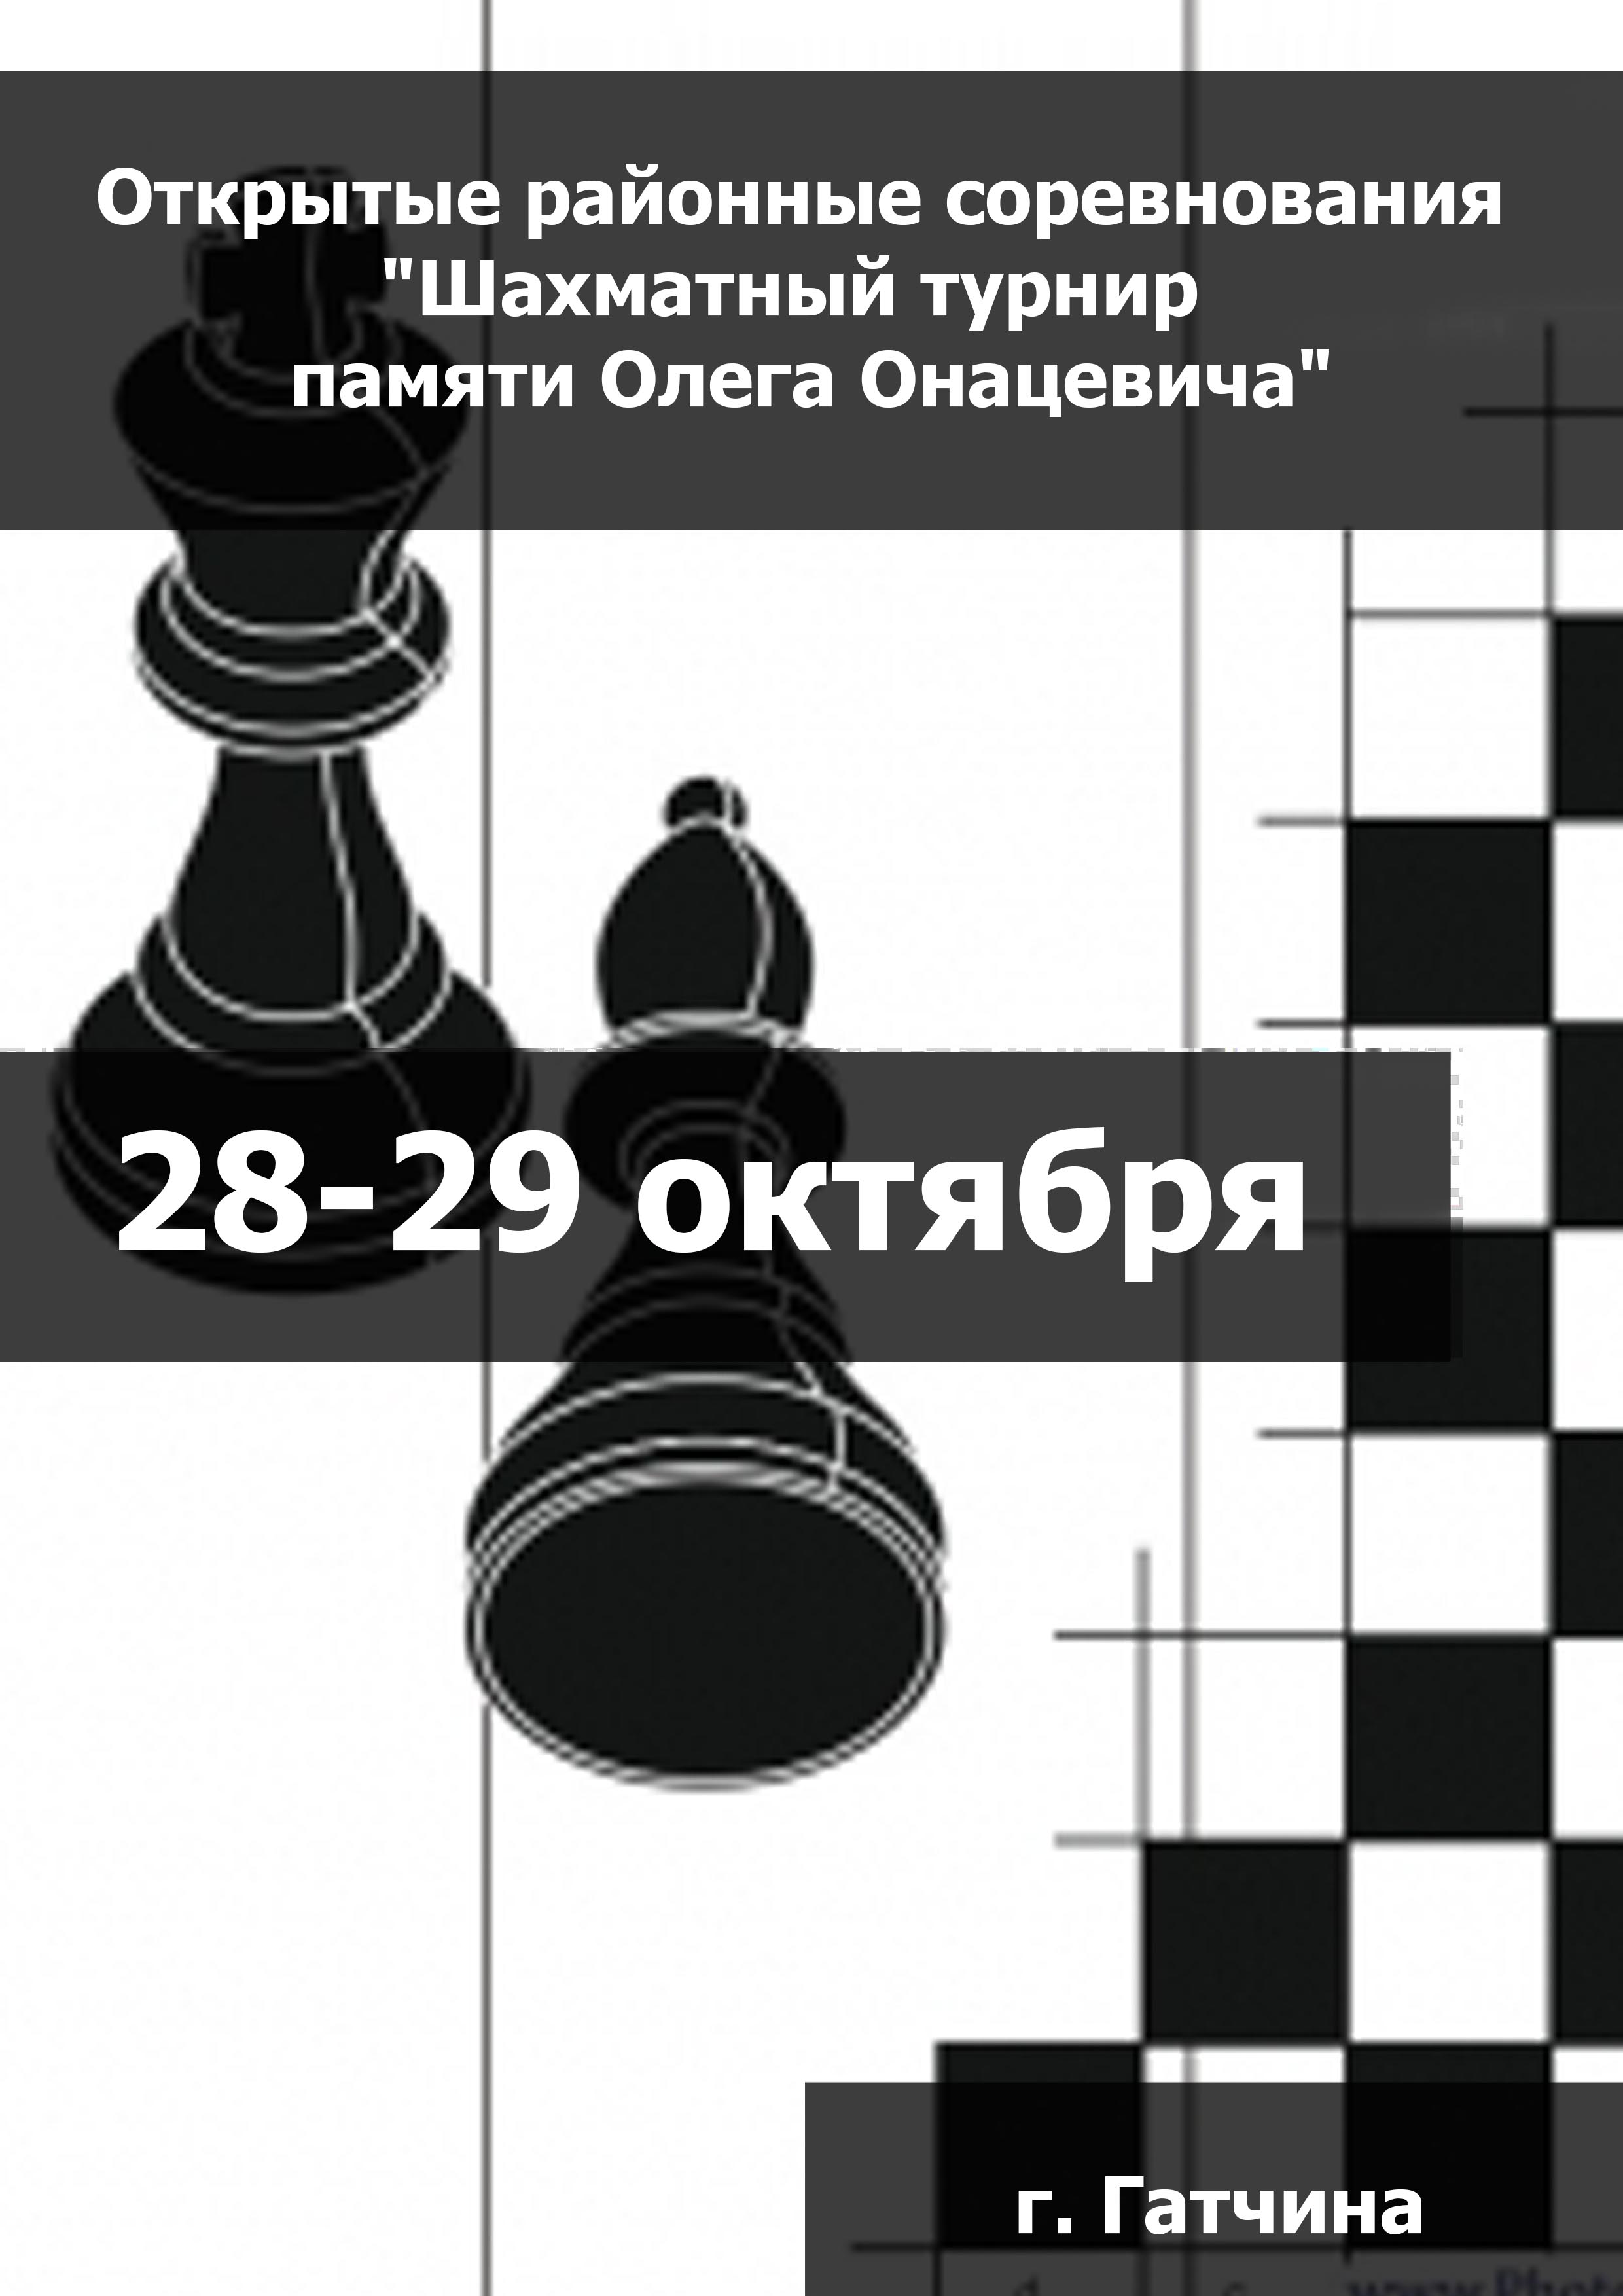 Открытые районные соревнования "Шахматный турнир  памяти Олега Онацевича" 28  ጥቅምት ግምገማ
 2023  ዓመት
 